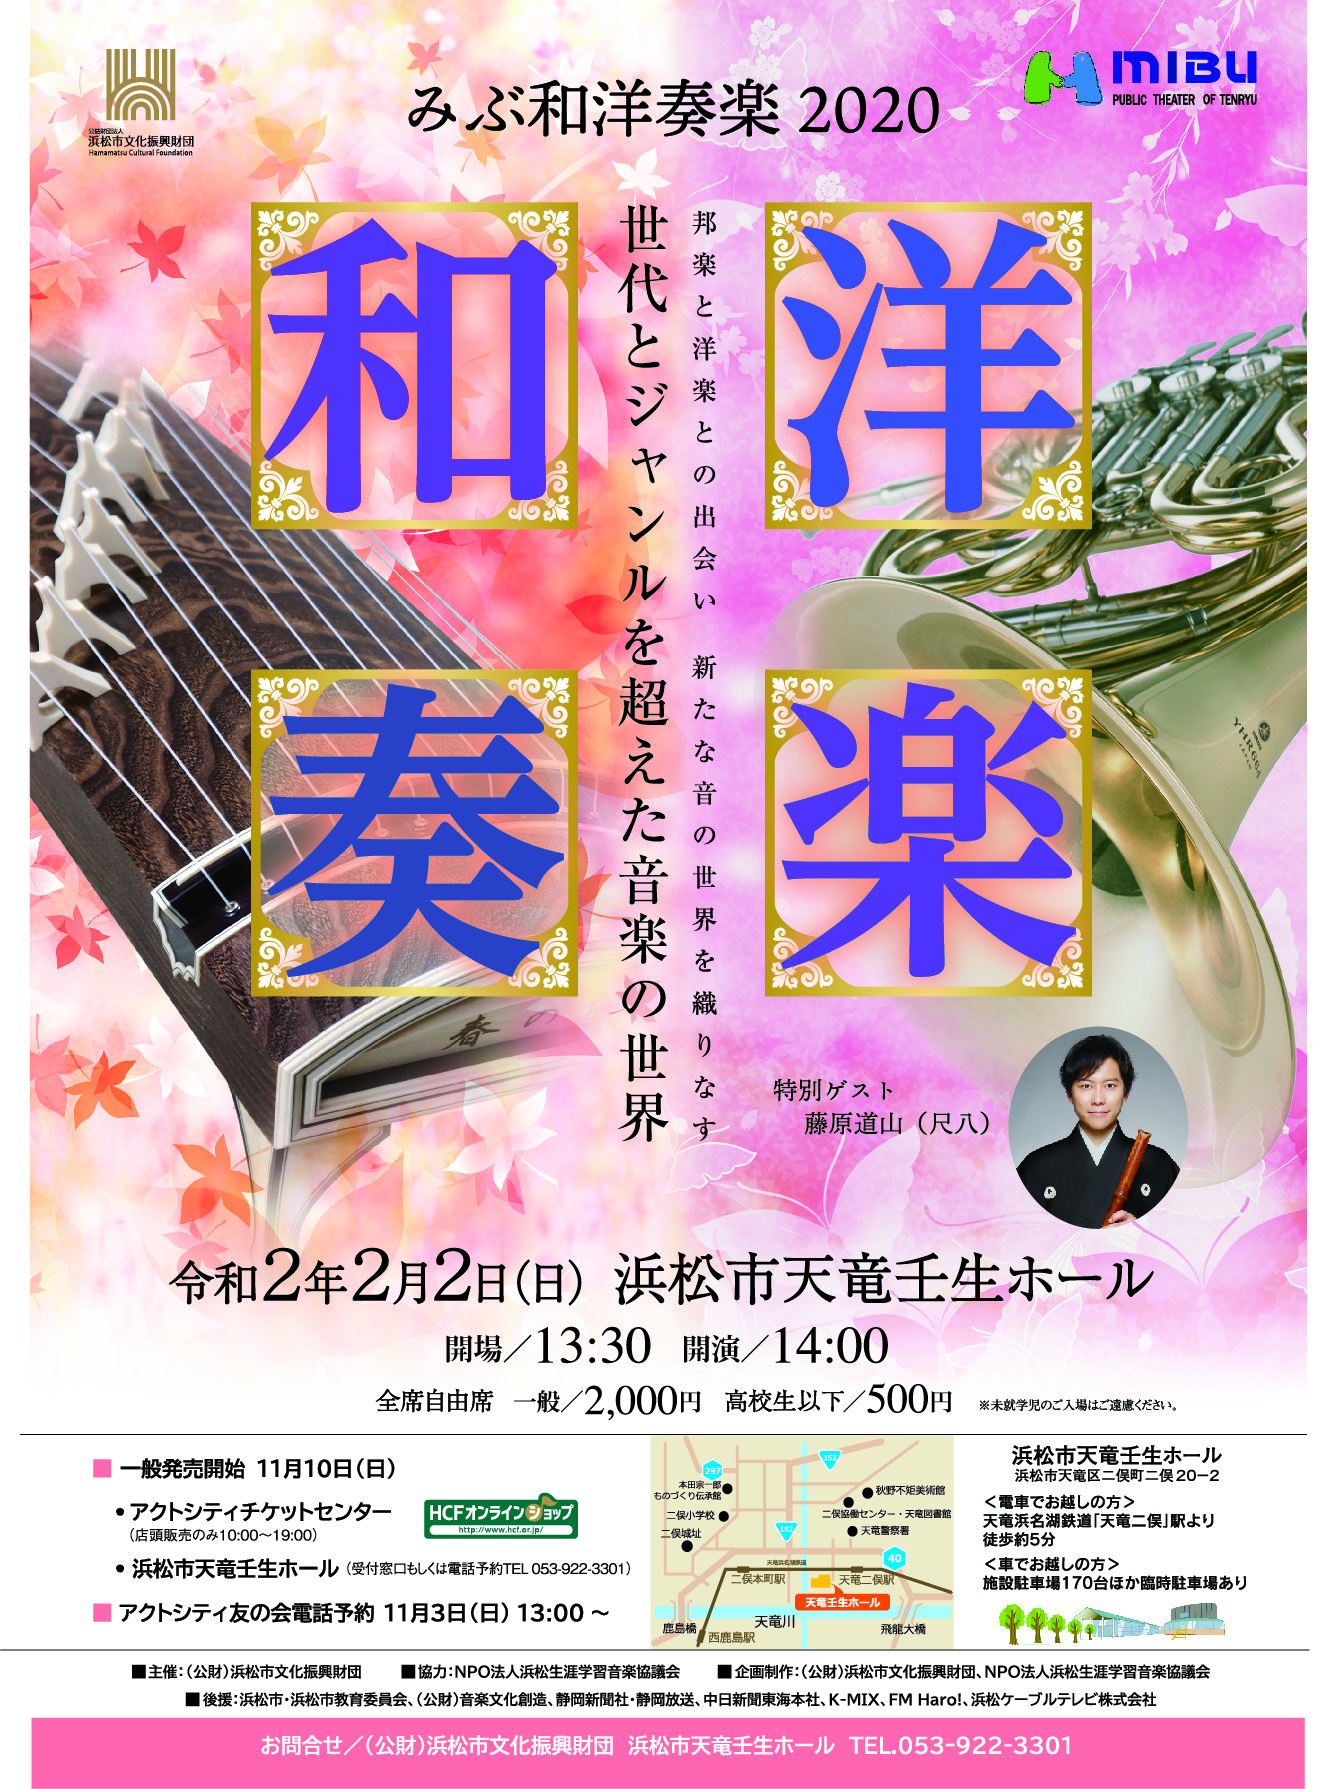 みぶ和洋奏楽 のチケット発売中です 浜松生涯学習音楽協議会